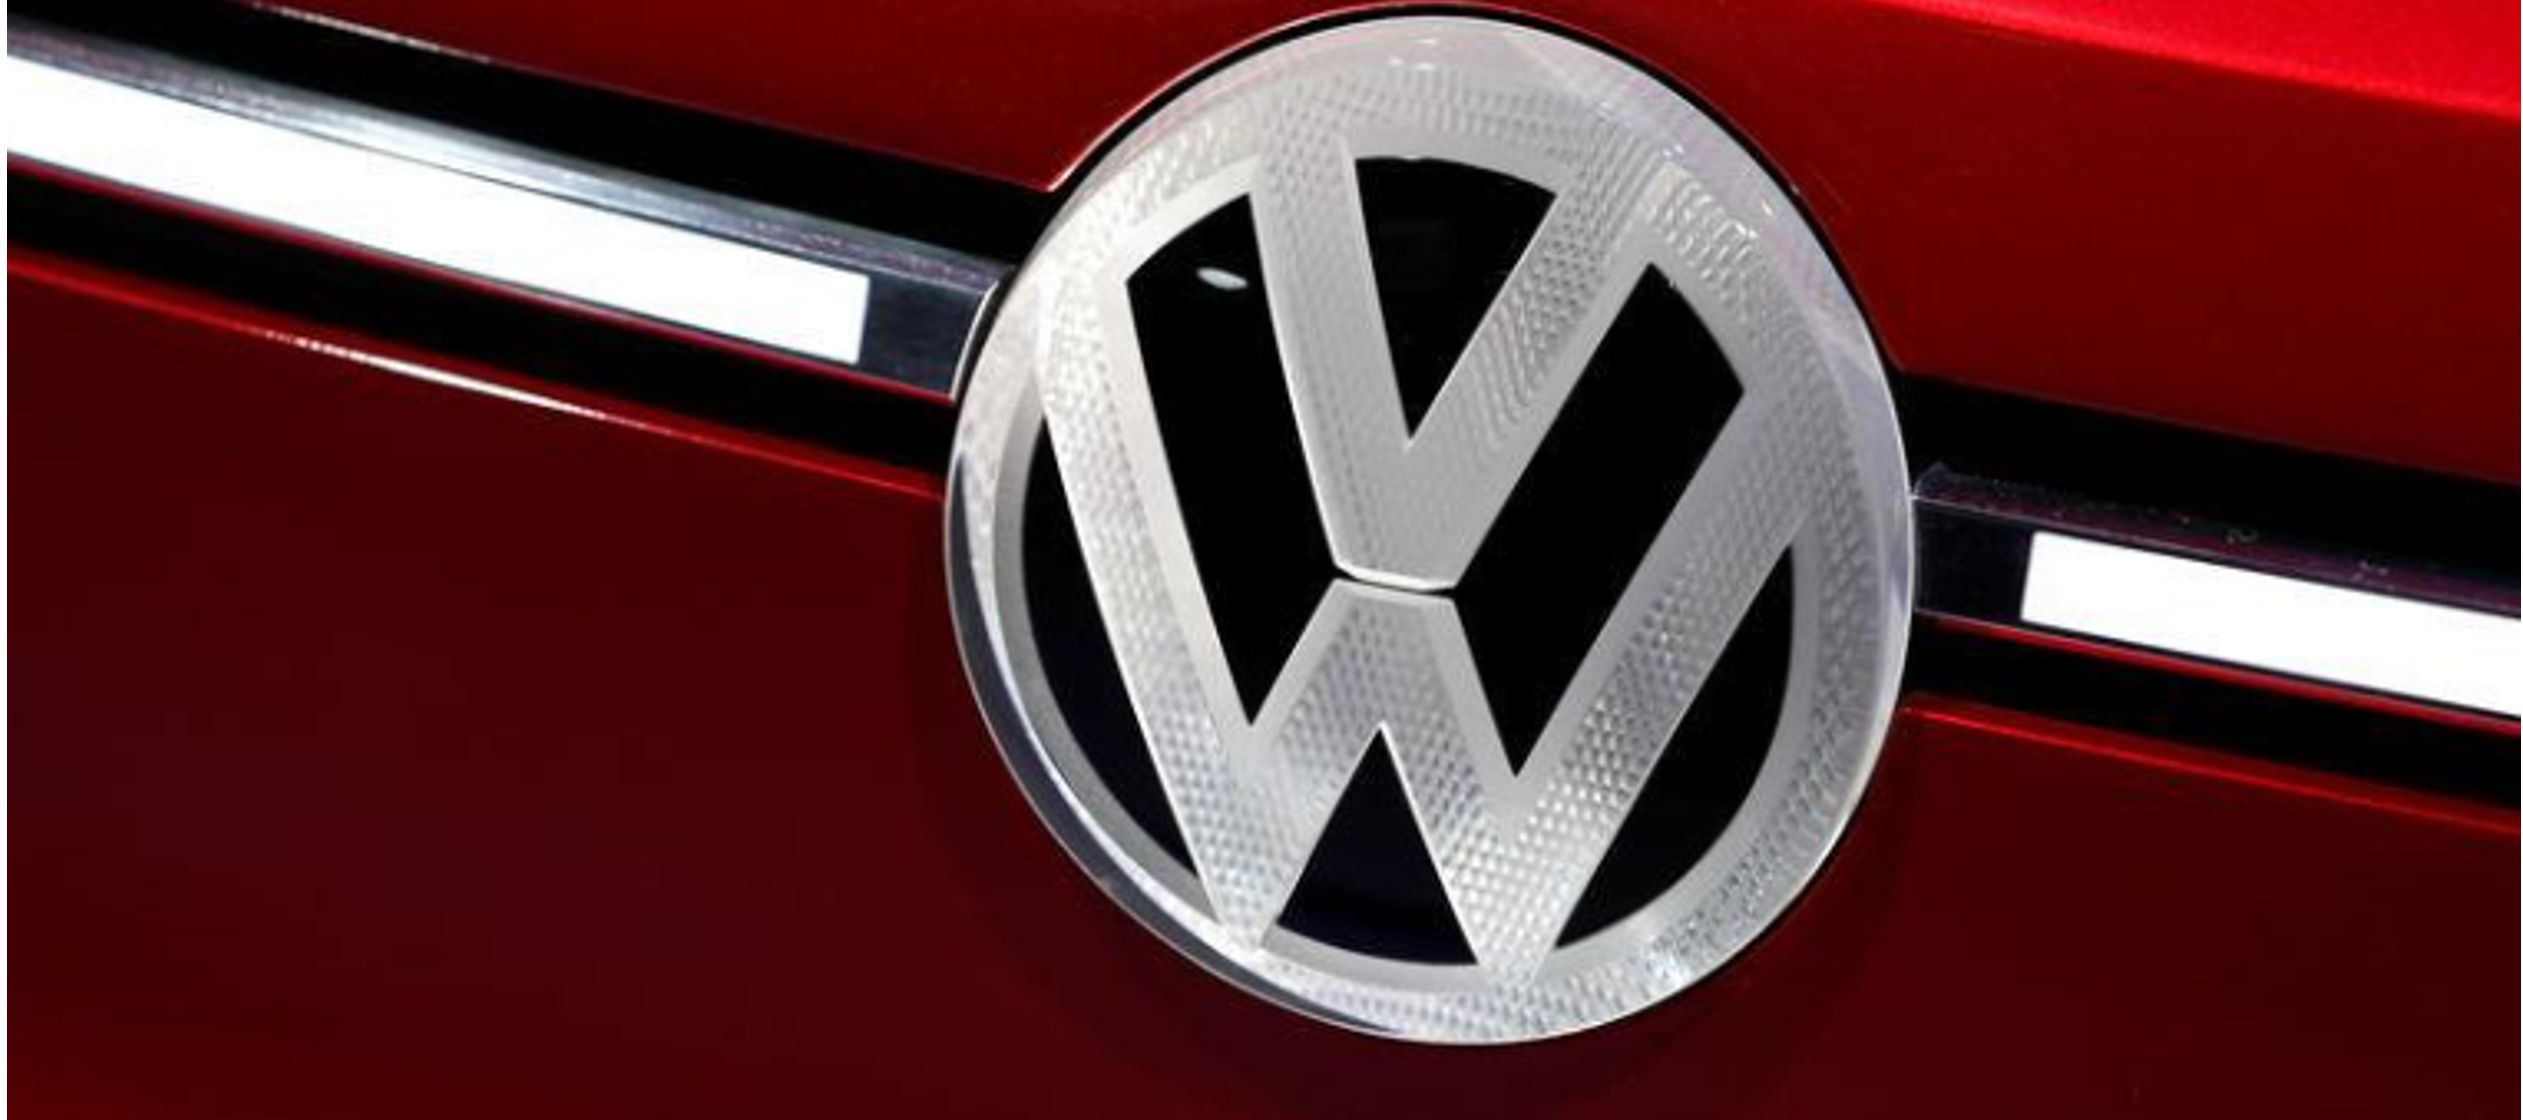 VW continúa viendo un potencial de crecimiento en China, el mercado de automóviles...